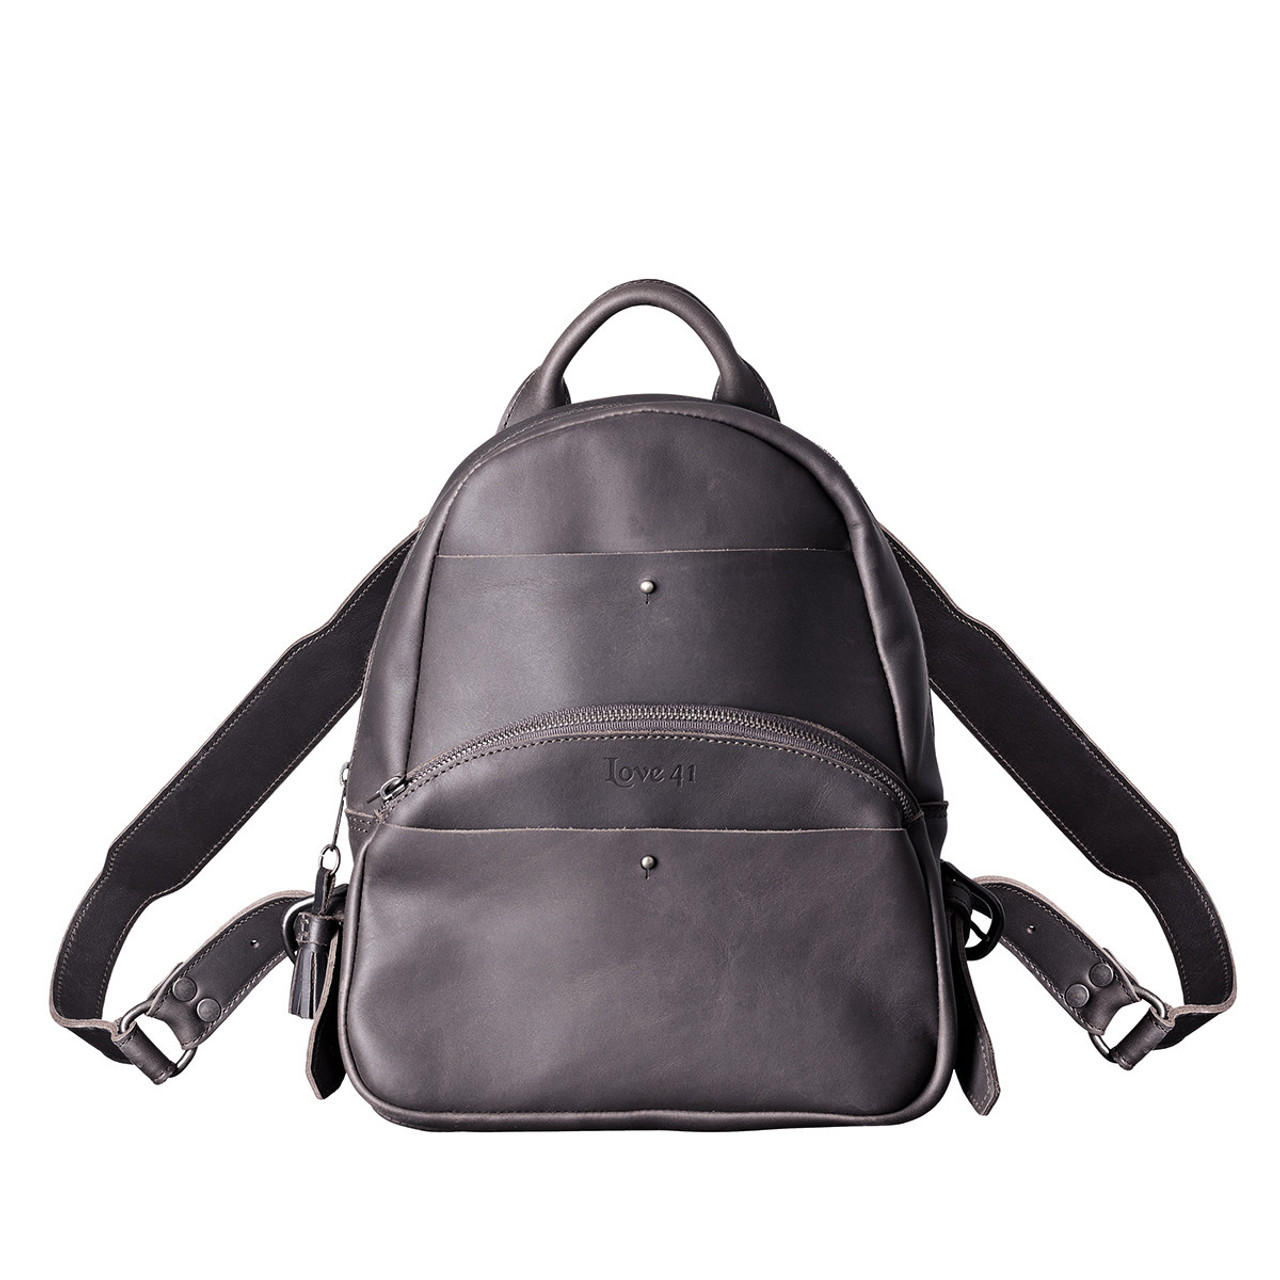 Leather backpack - Black - Men